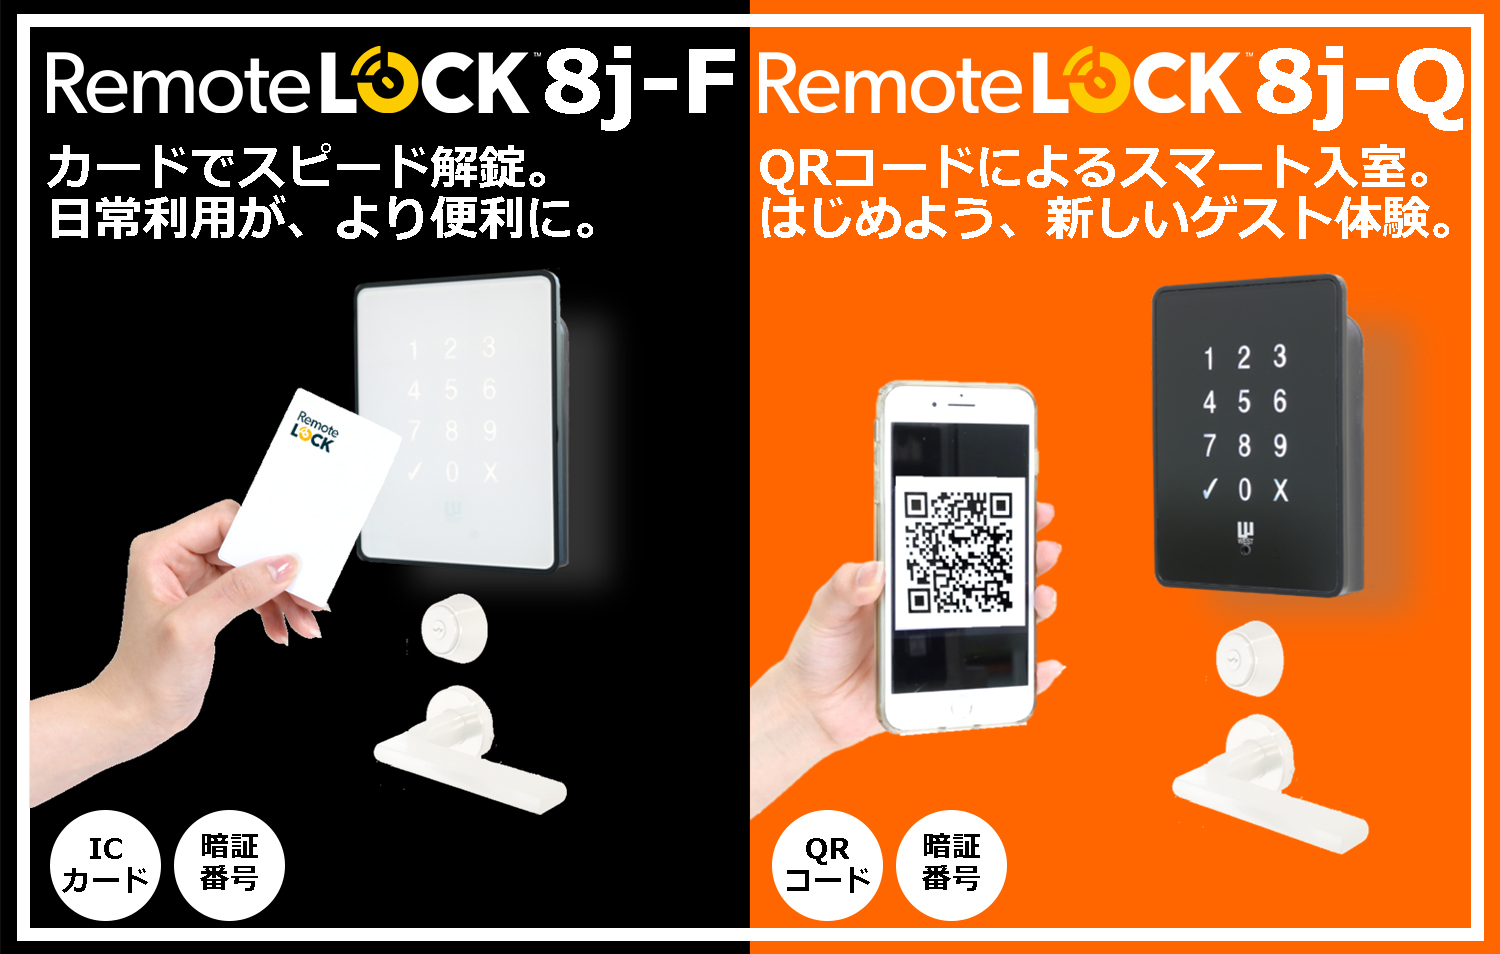 新型スマートロック、「RemoteLOCK 8j-F（FeliCa対応版）」および ...